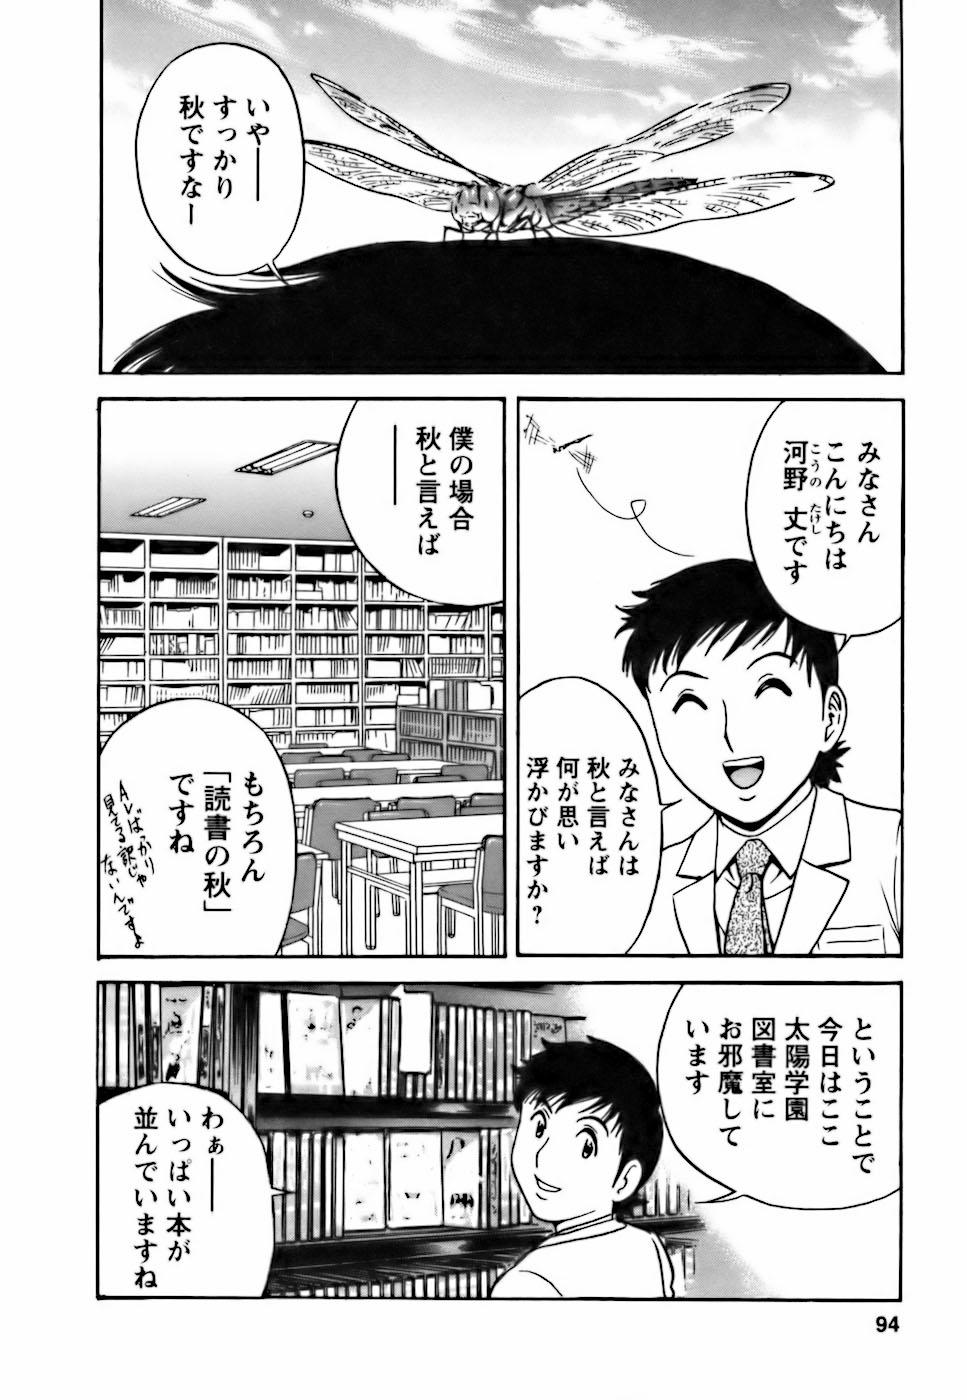 [Hidemaru] Mo-Retsu! Boin Sensei (Boing Boing Teacher) Vol.3 89